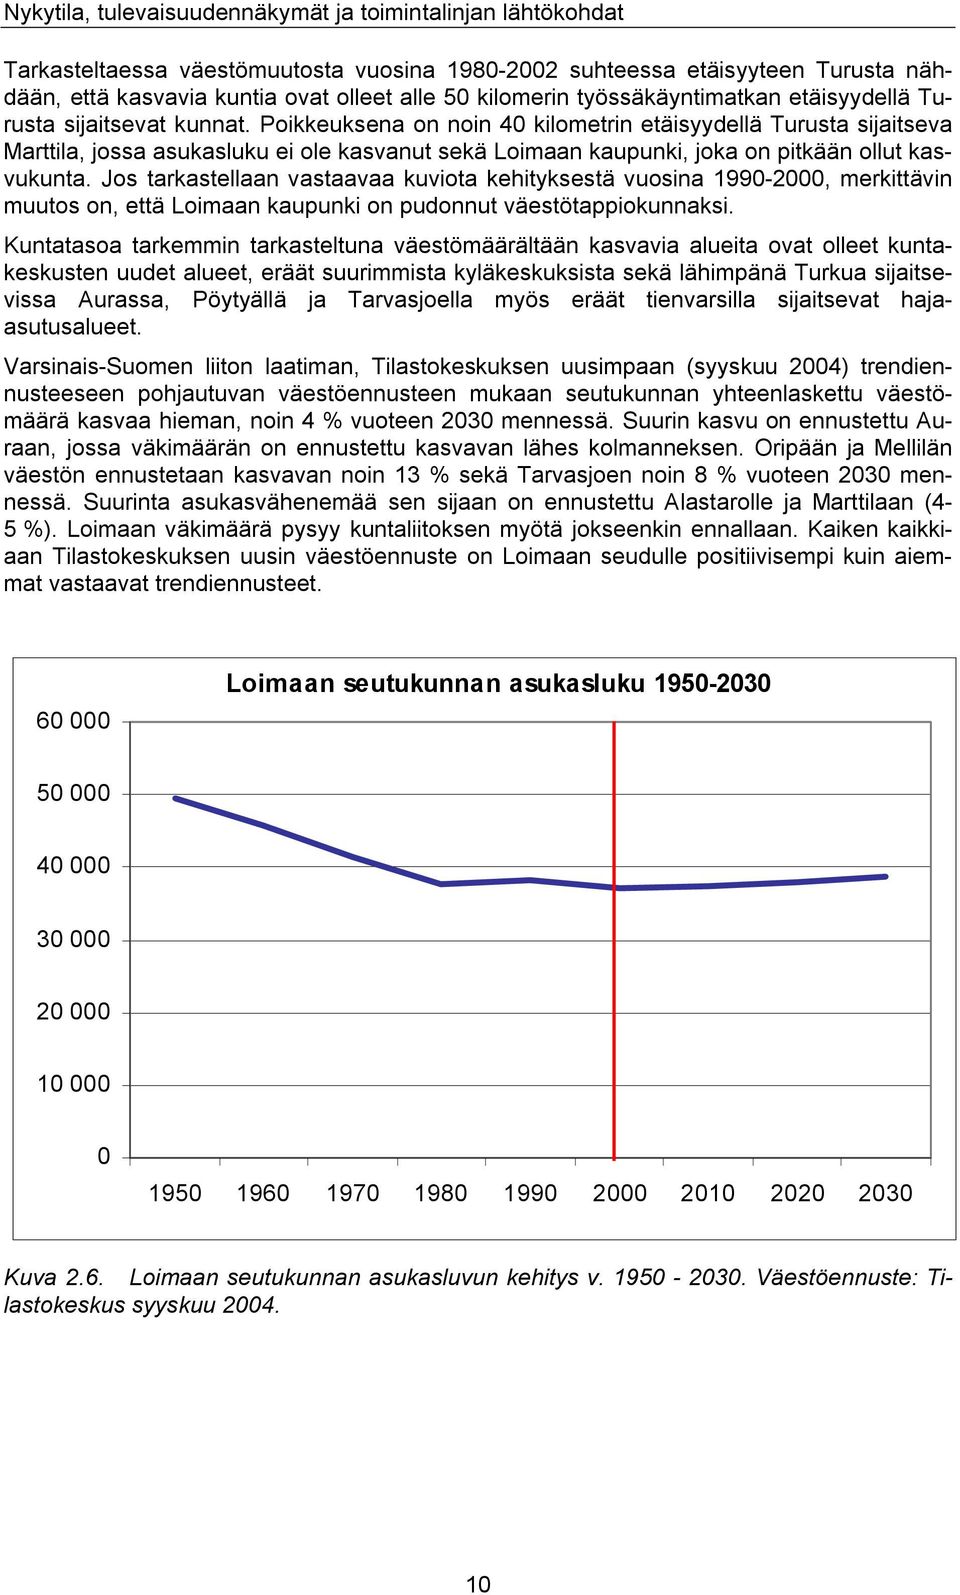 Jos tarkastellaan vastaavaa kuviota kehityksestä vuosina 1990-2000, merkittävin muutos on, että Loimaan kaupunki on pudonnut väestötappiokunnaksi.